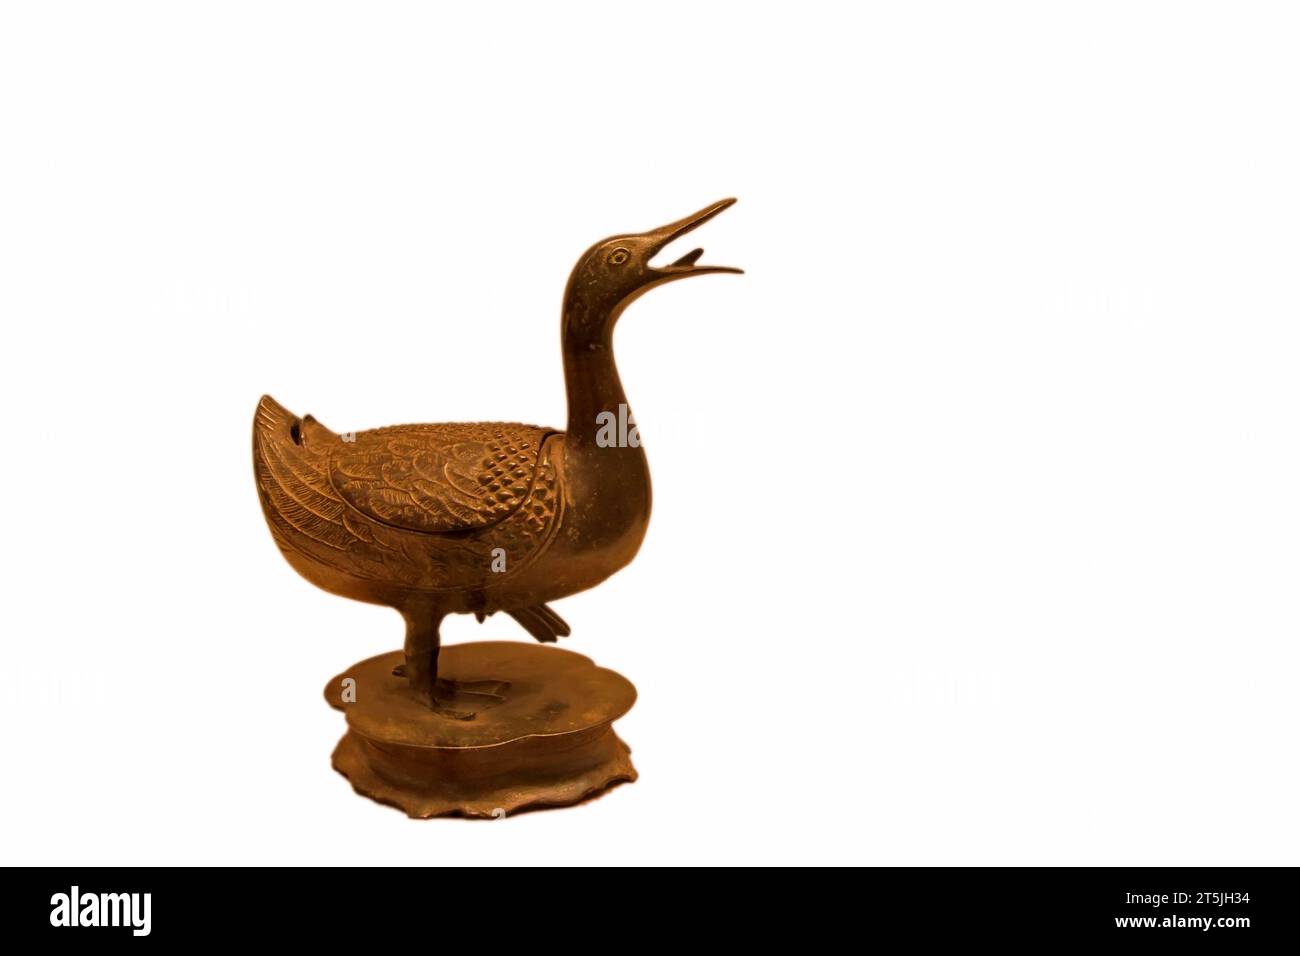 CHINA - DINASTÍA MING (1368-1644): Quemador de incienso en forma de pato, Dinastía Ming (1368-1644), colección en el museo nacional de China, Beijing, China. Foto de stock